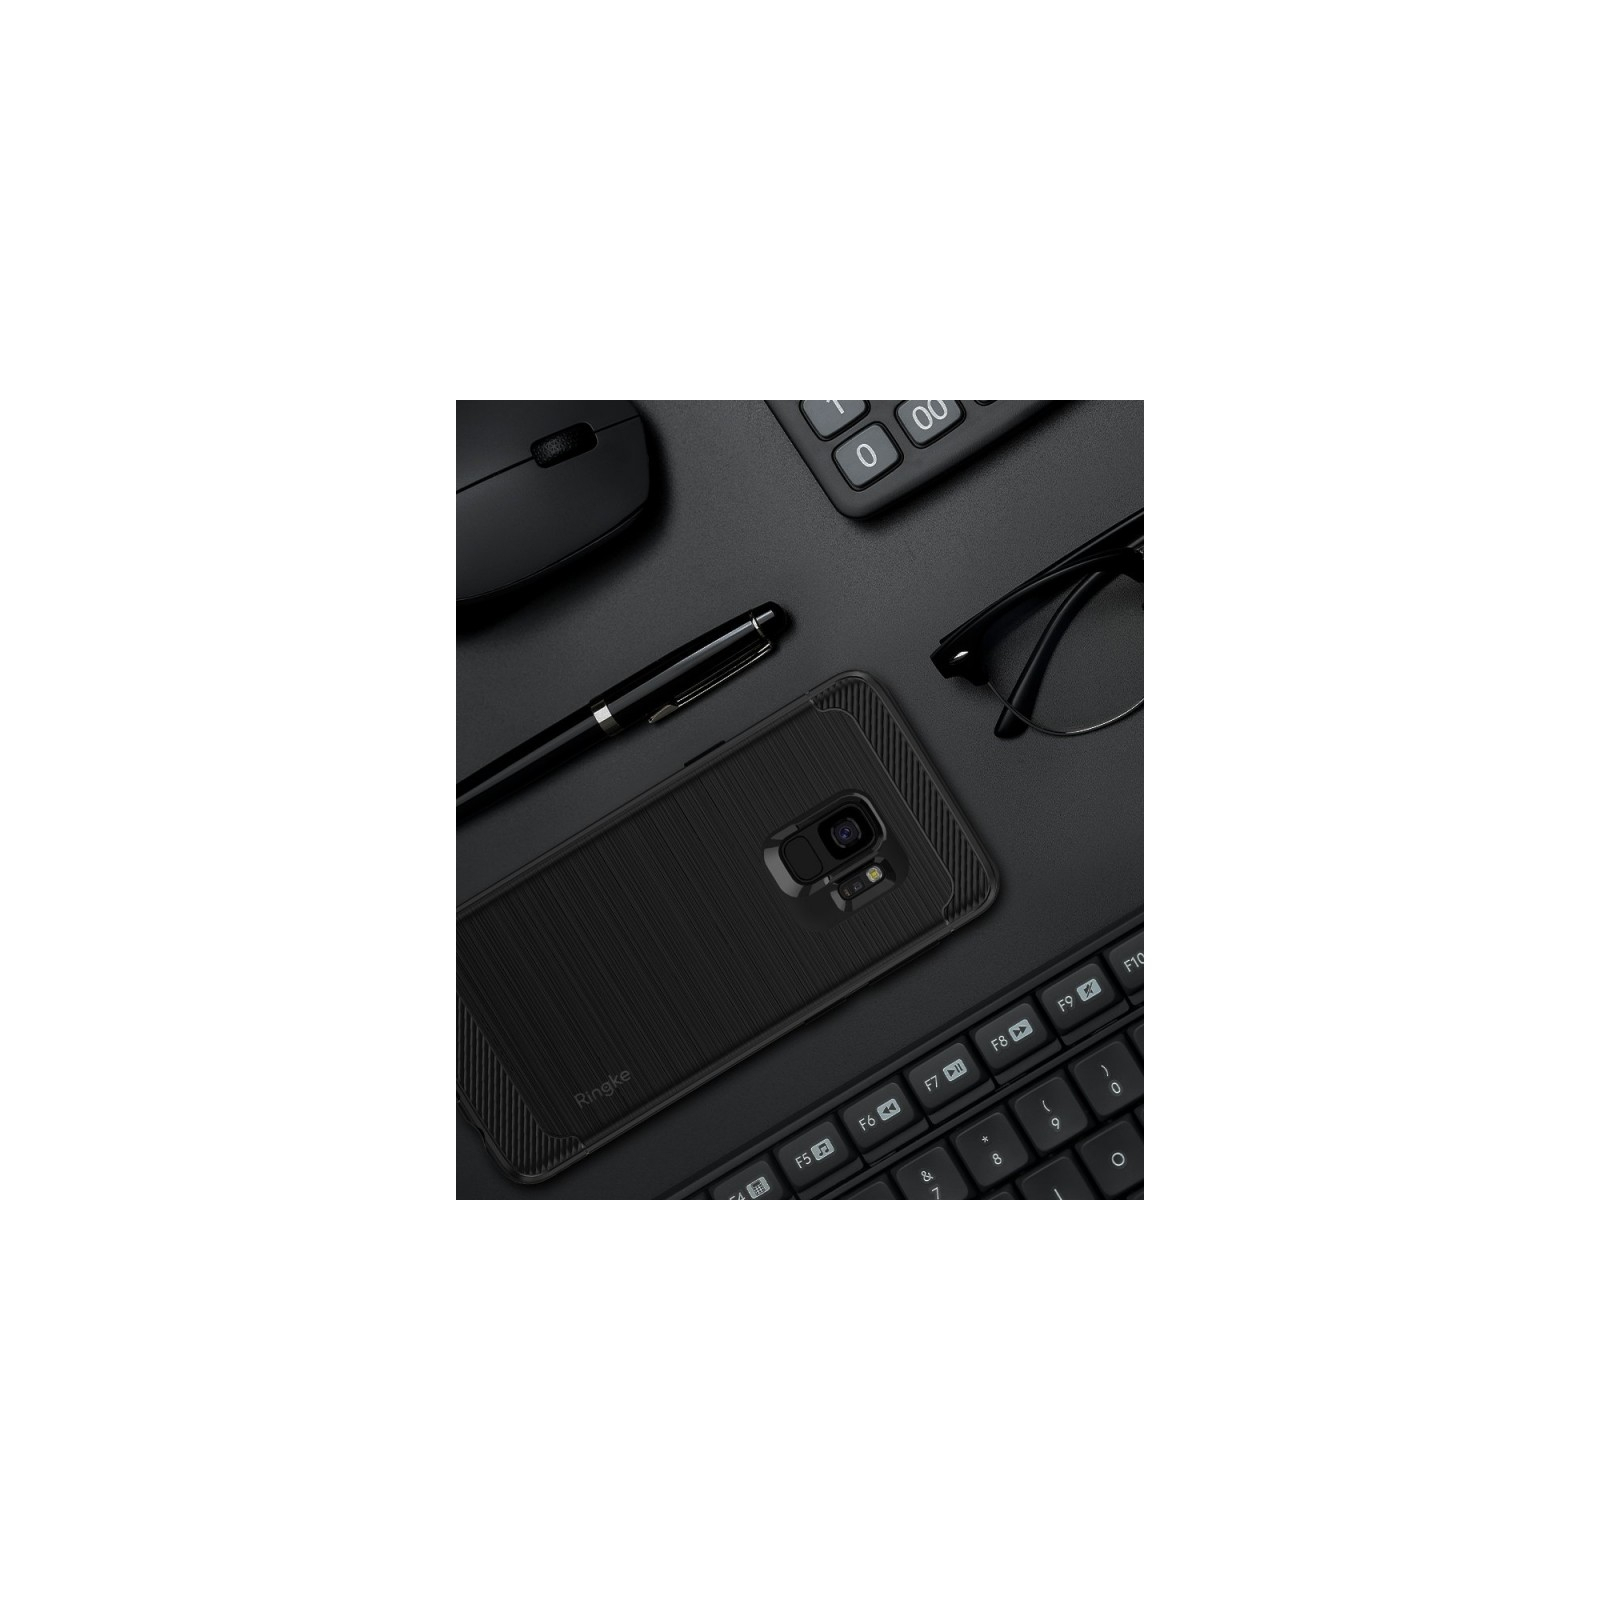 Чехол для мобильного телефона Ringke Onyx Samsung Galaxy S9 Black (RCS4417) изображение 4